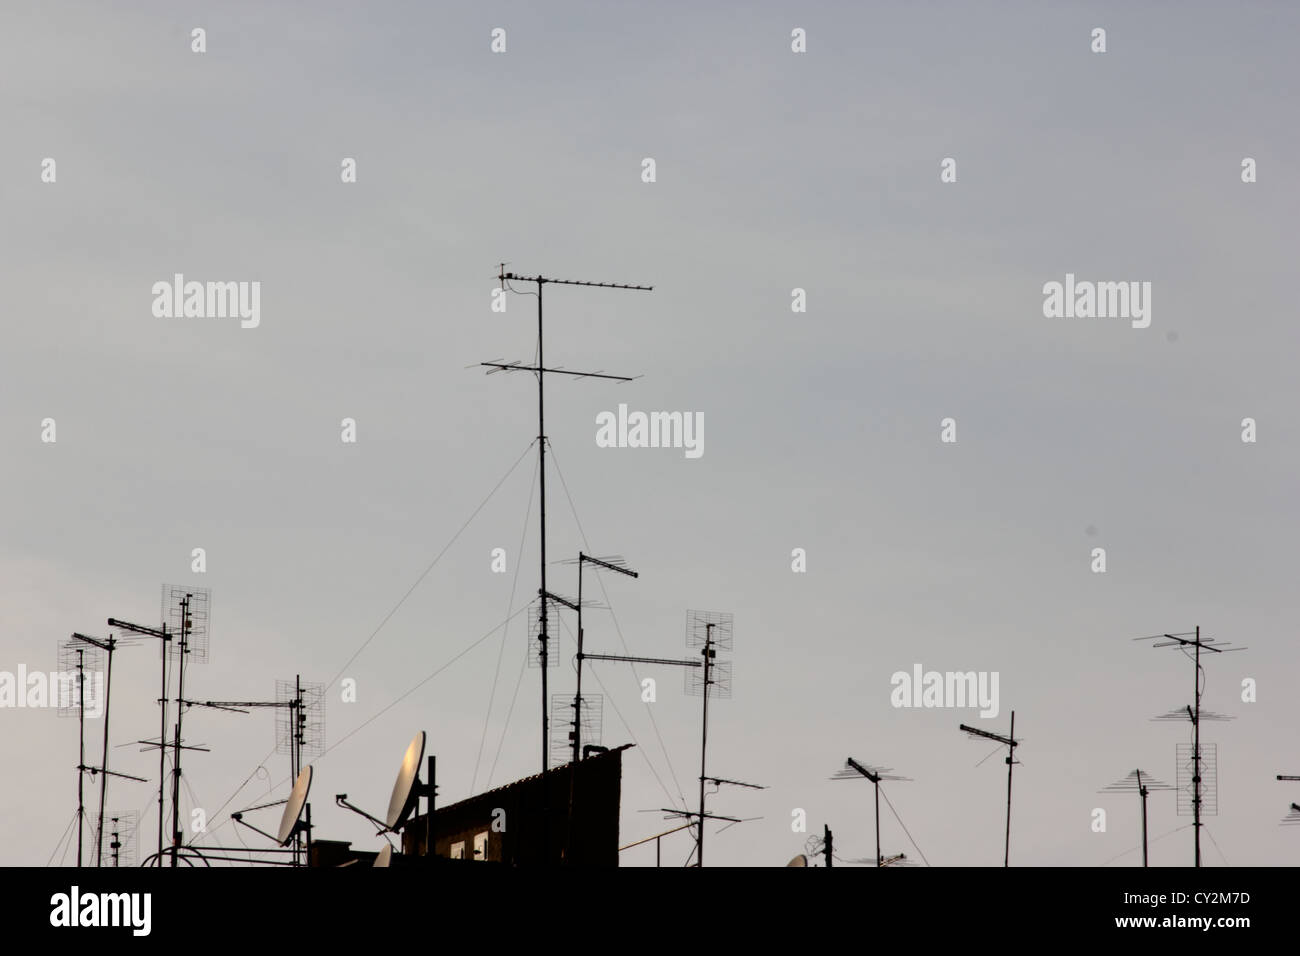 Sur le toit et antennes contre un ciel clair, antenne, antenne de télévision, antenne de télévision, photoarkive Banque D'Images